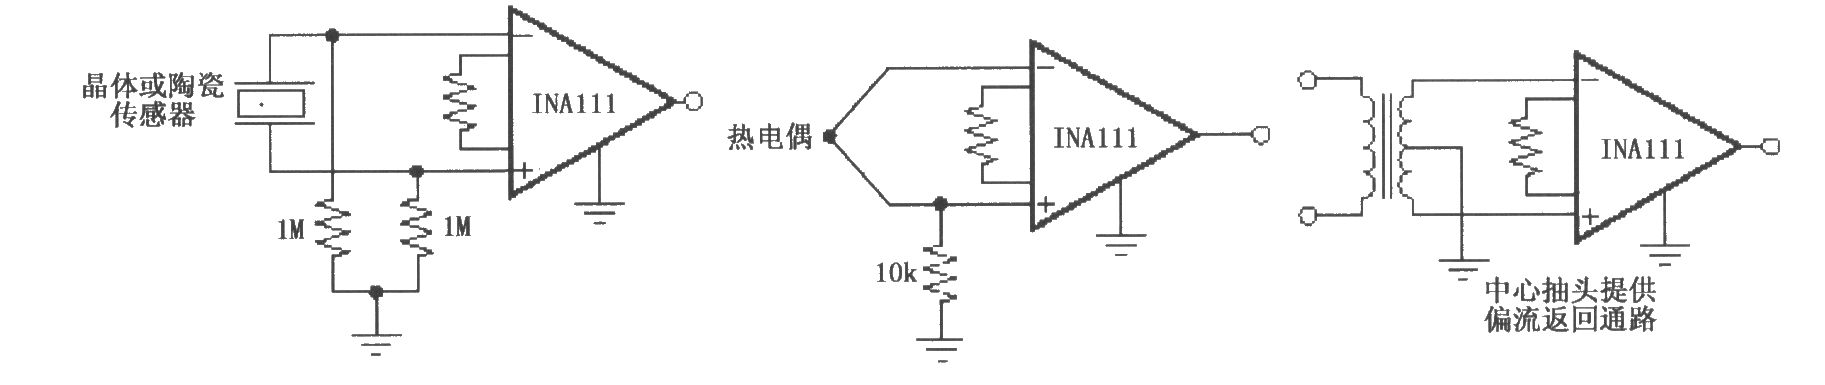 提供一条输入共模电流通路的放大电路(INA111)